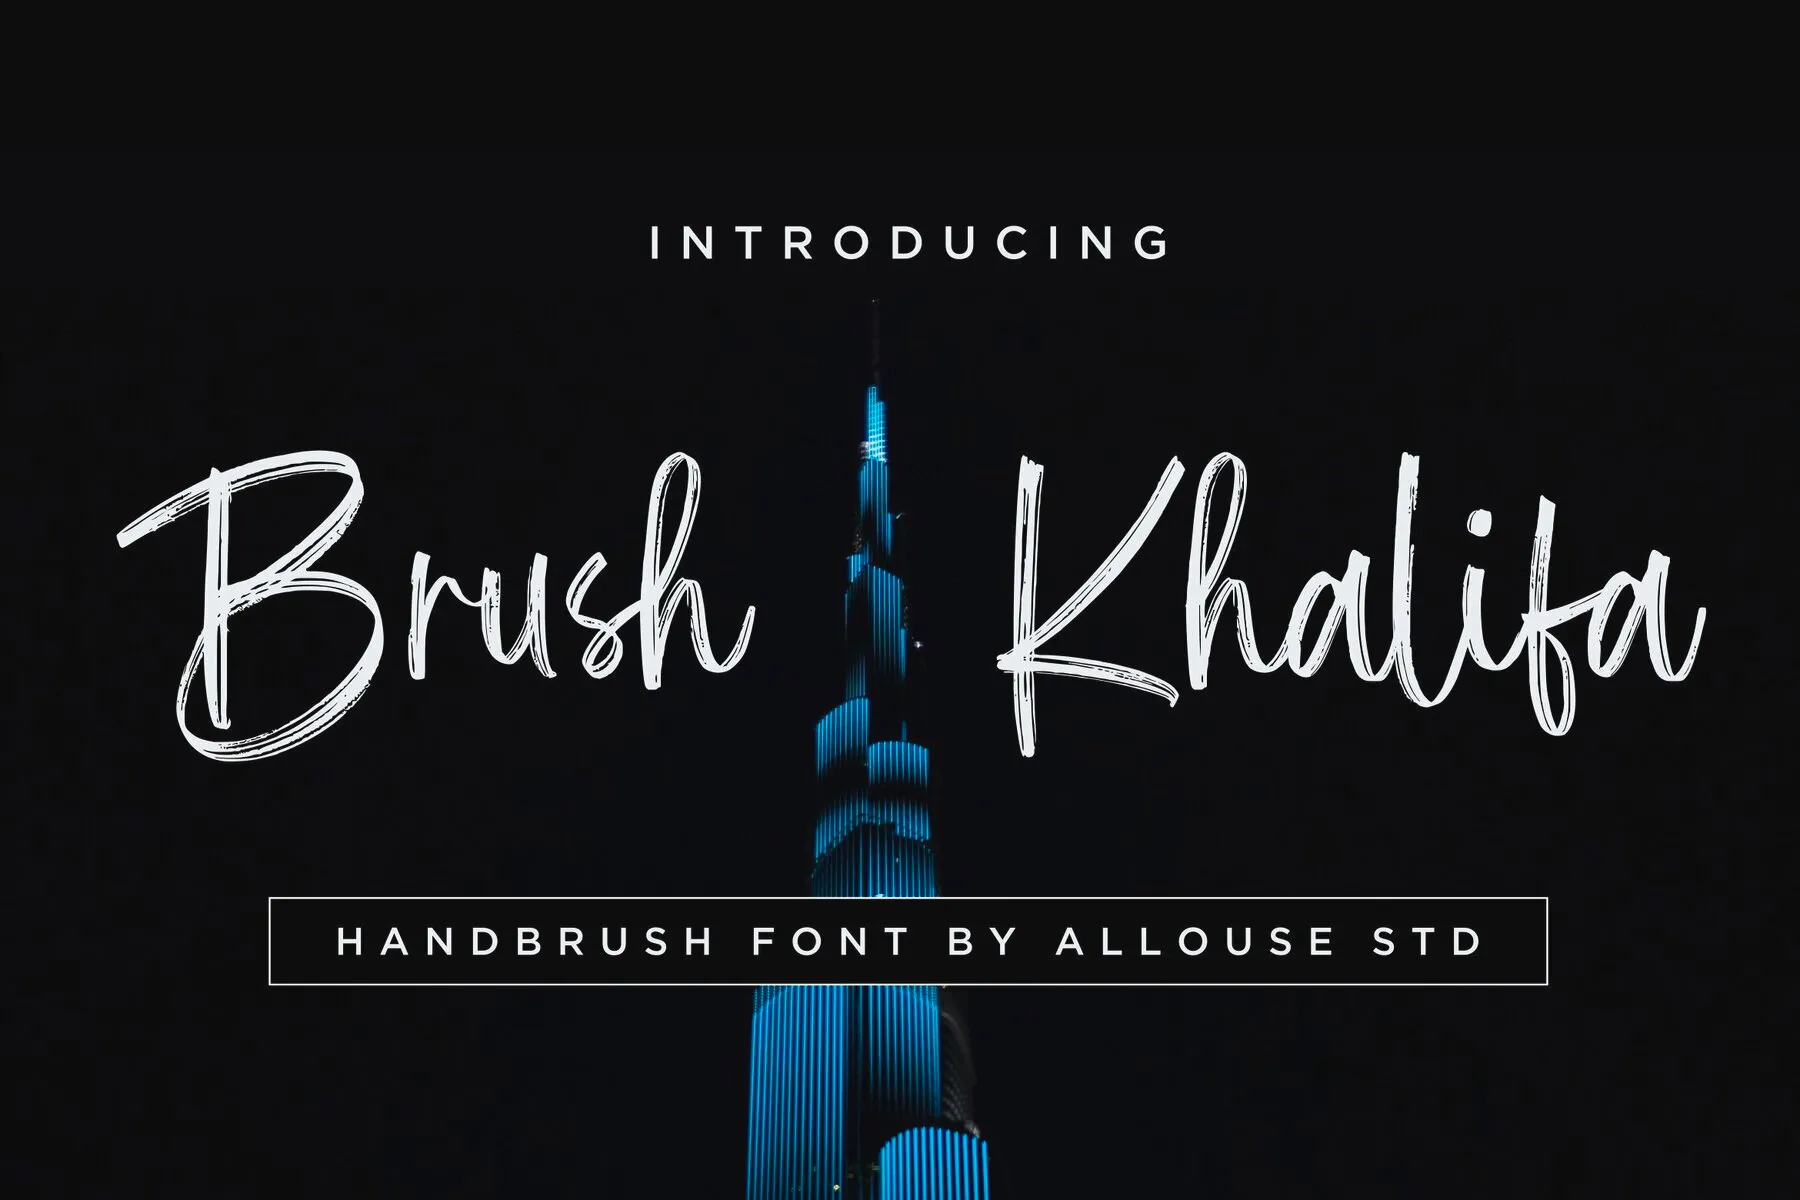 Brush Khalifa